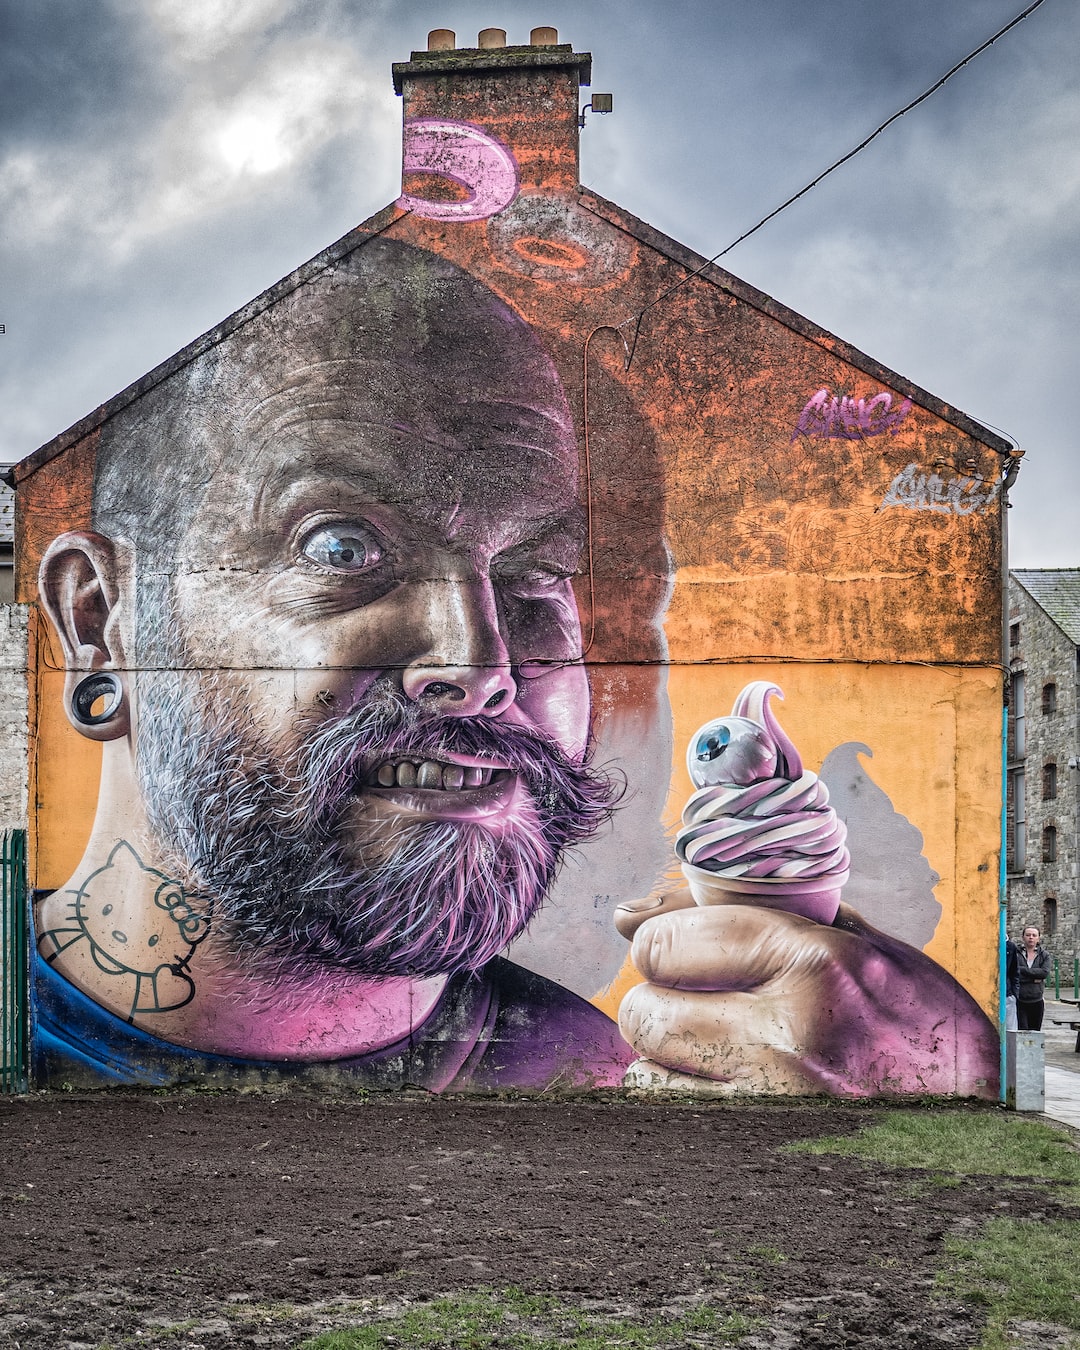 Mr. Squinty.  Street art in Limerick, Ireland.  Fierce!